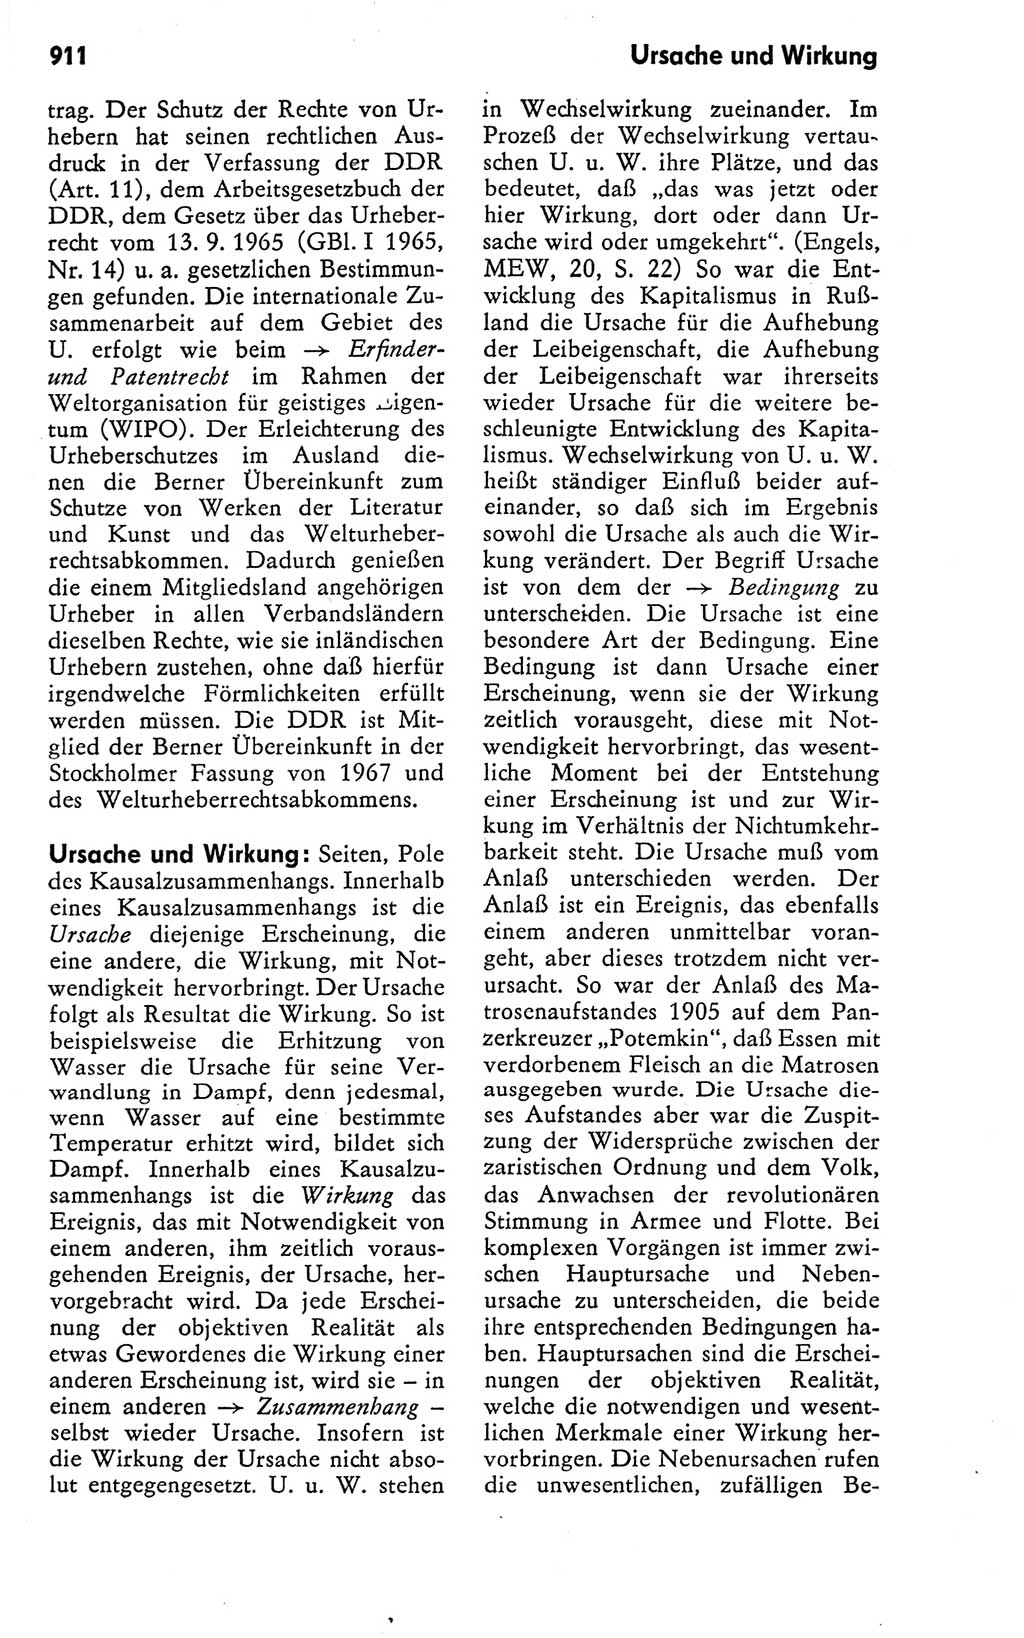 Kleines politisches Wörterbuch [Deutsche Demokratische Republik (DDR)] 1978, Seite 911 (Kl. pol. Wb. DDR 1978, S. 911)